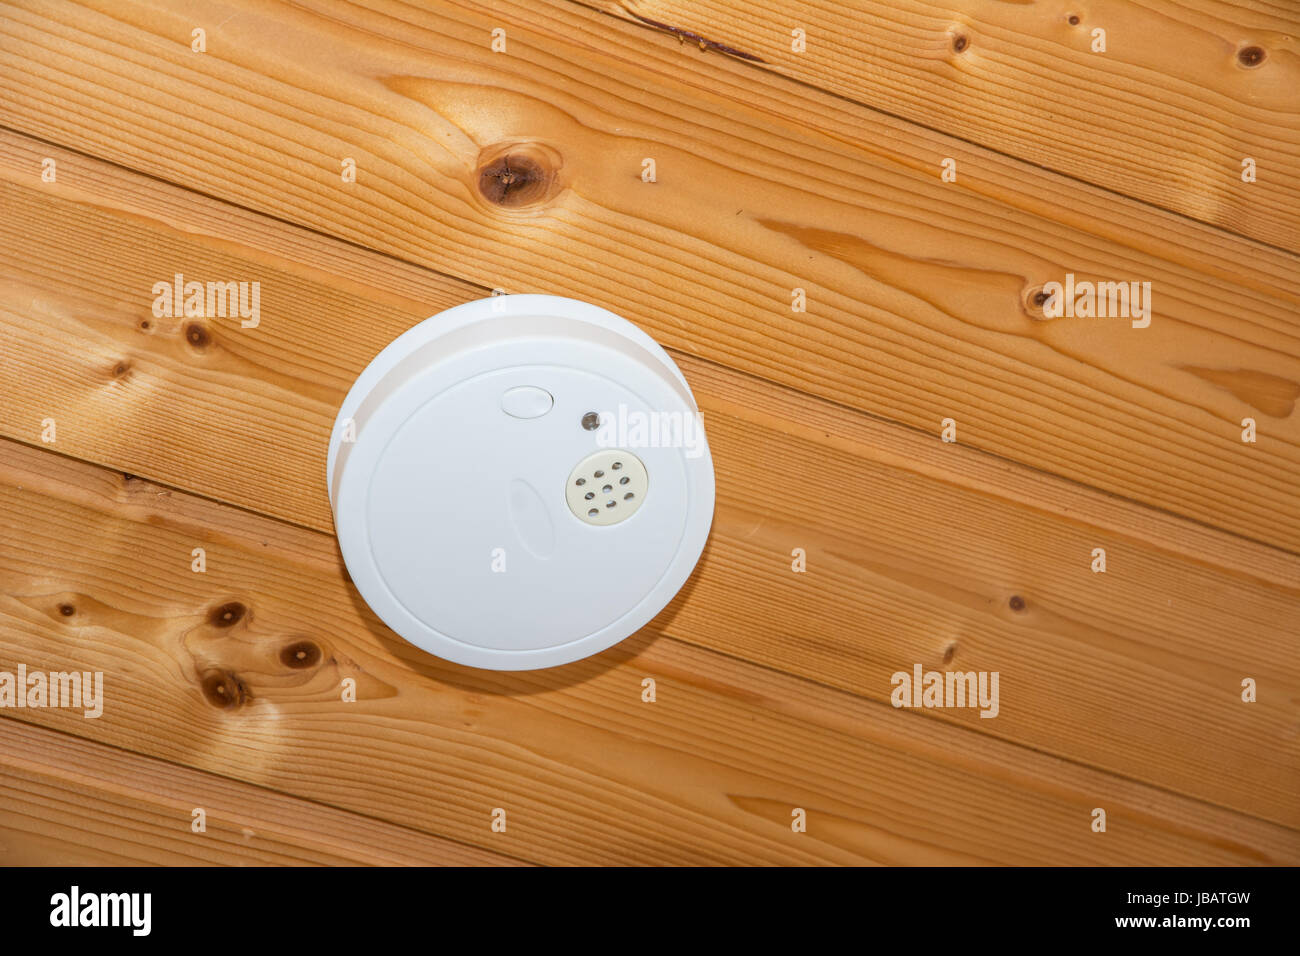 Sécurité au feu un détecteur de fumée à un plafond en bois Photo Stock -  Alamy